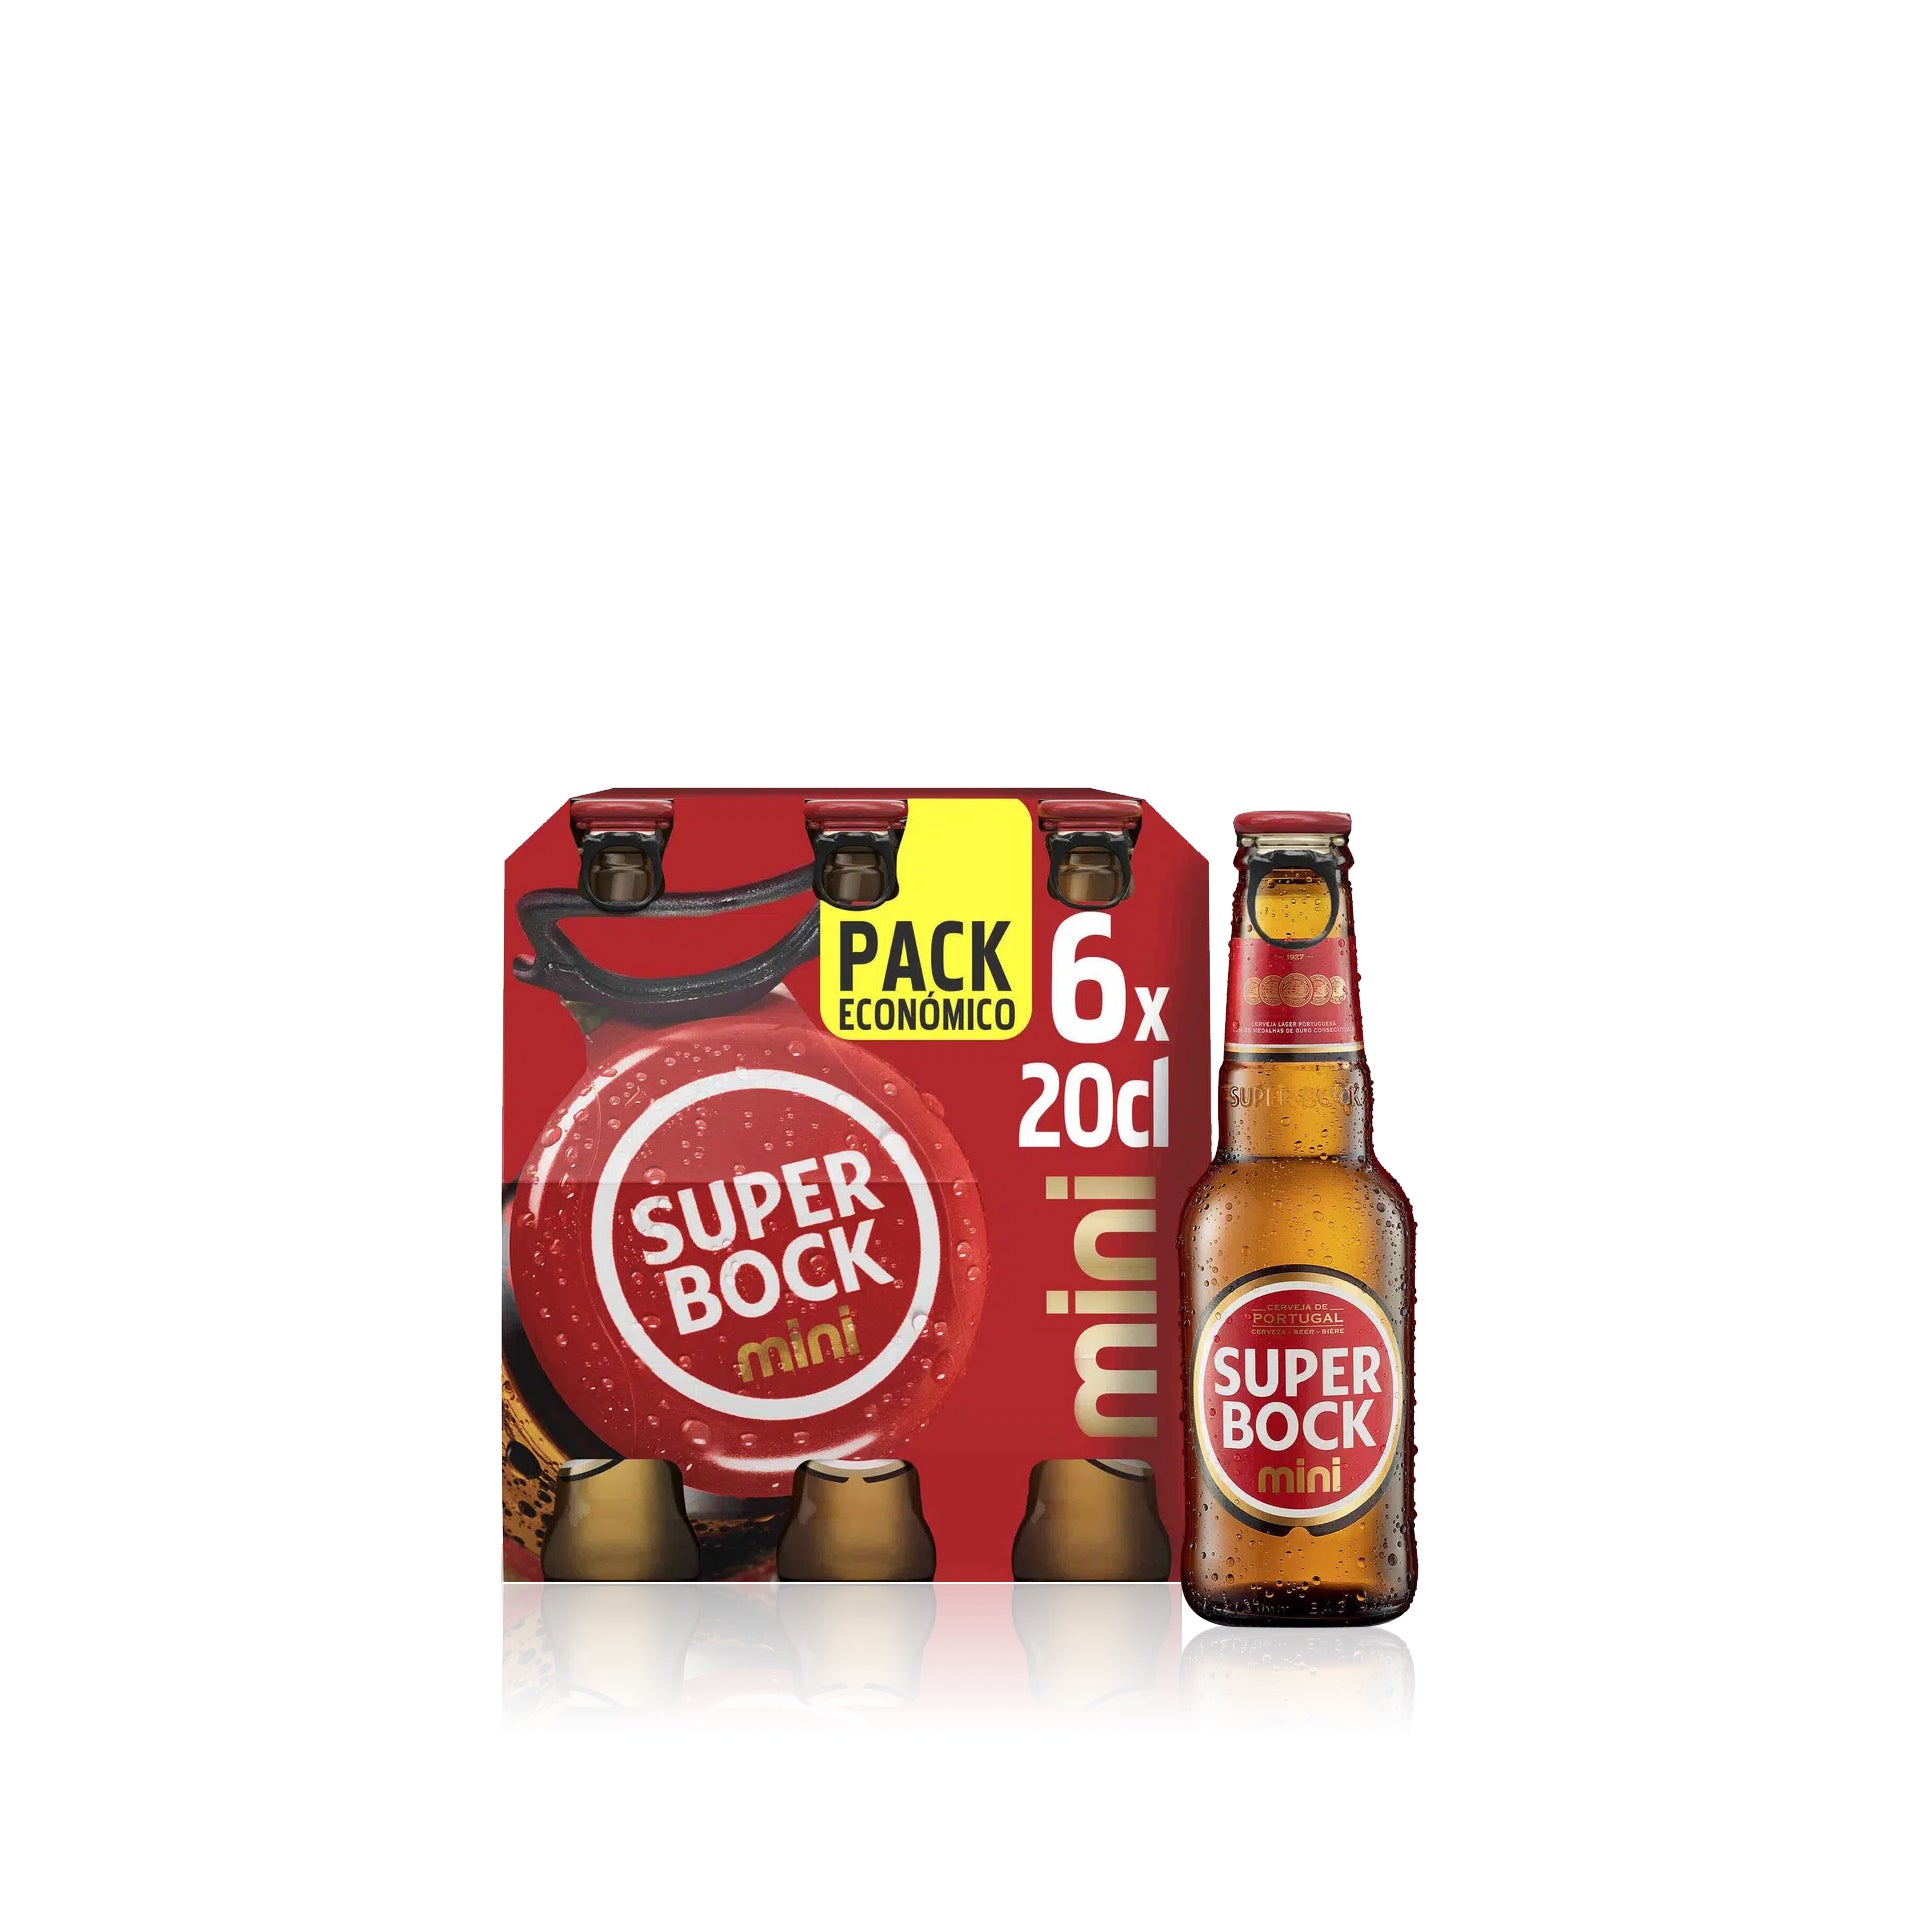 Super Bock Cerveja Mini TP 20 cl - Pack 6 x 20 cl